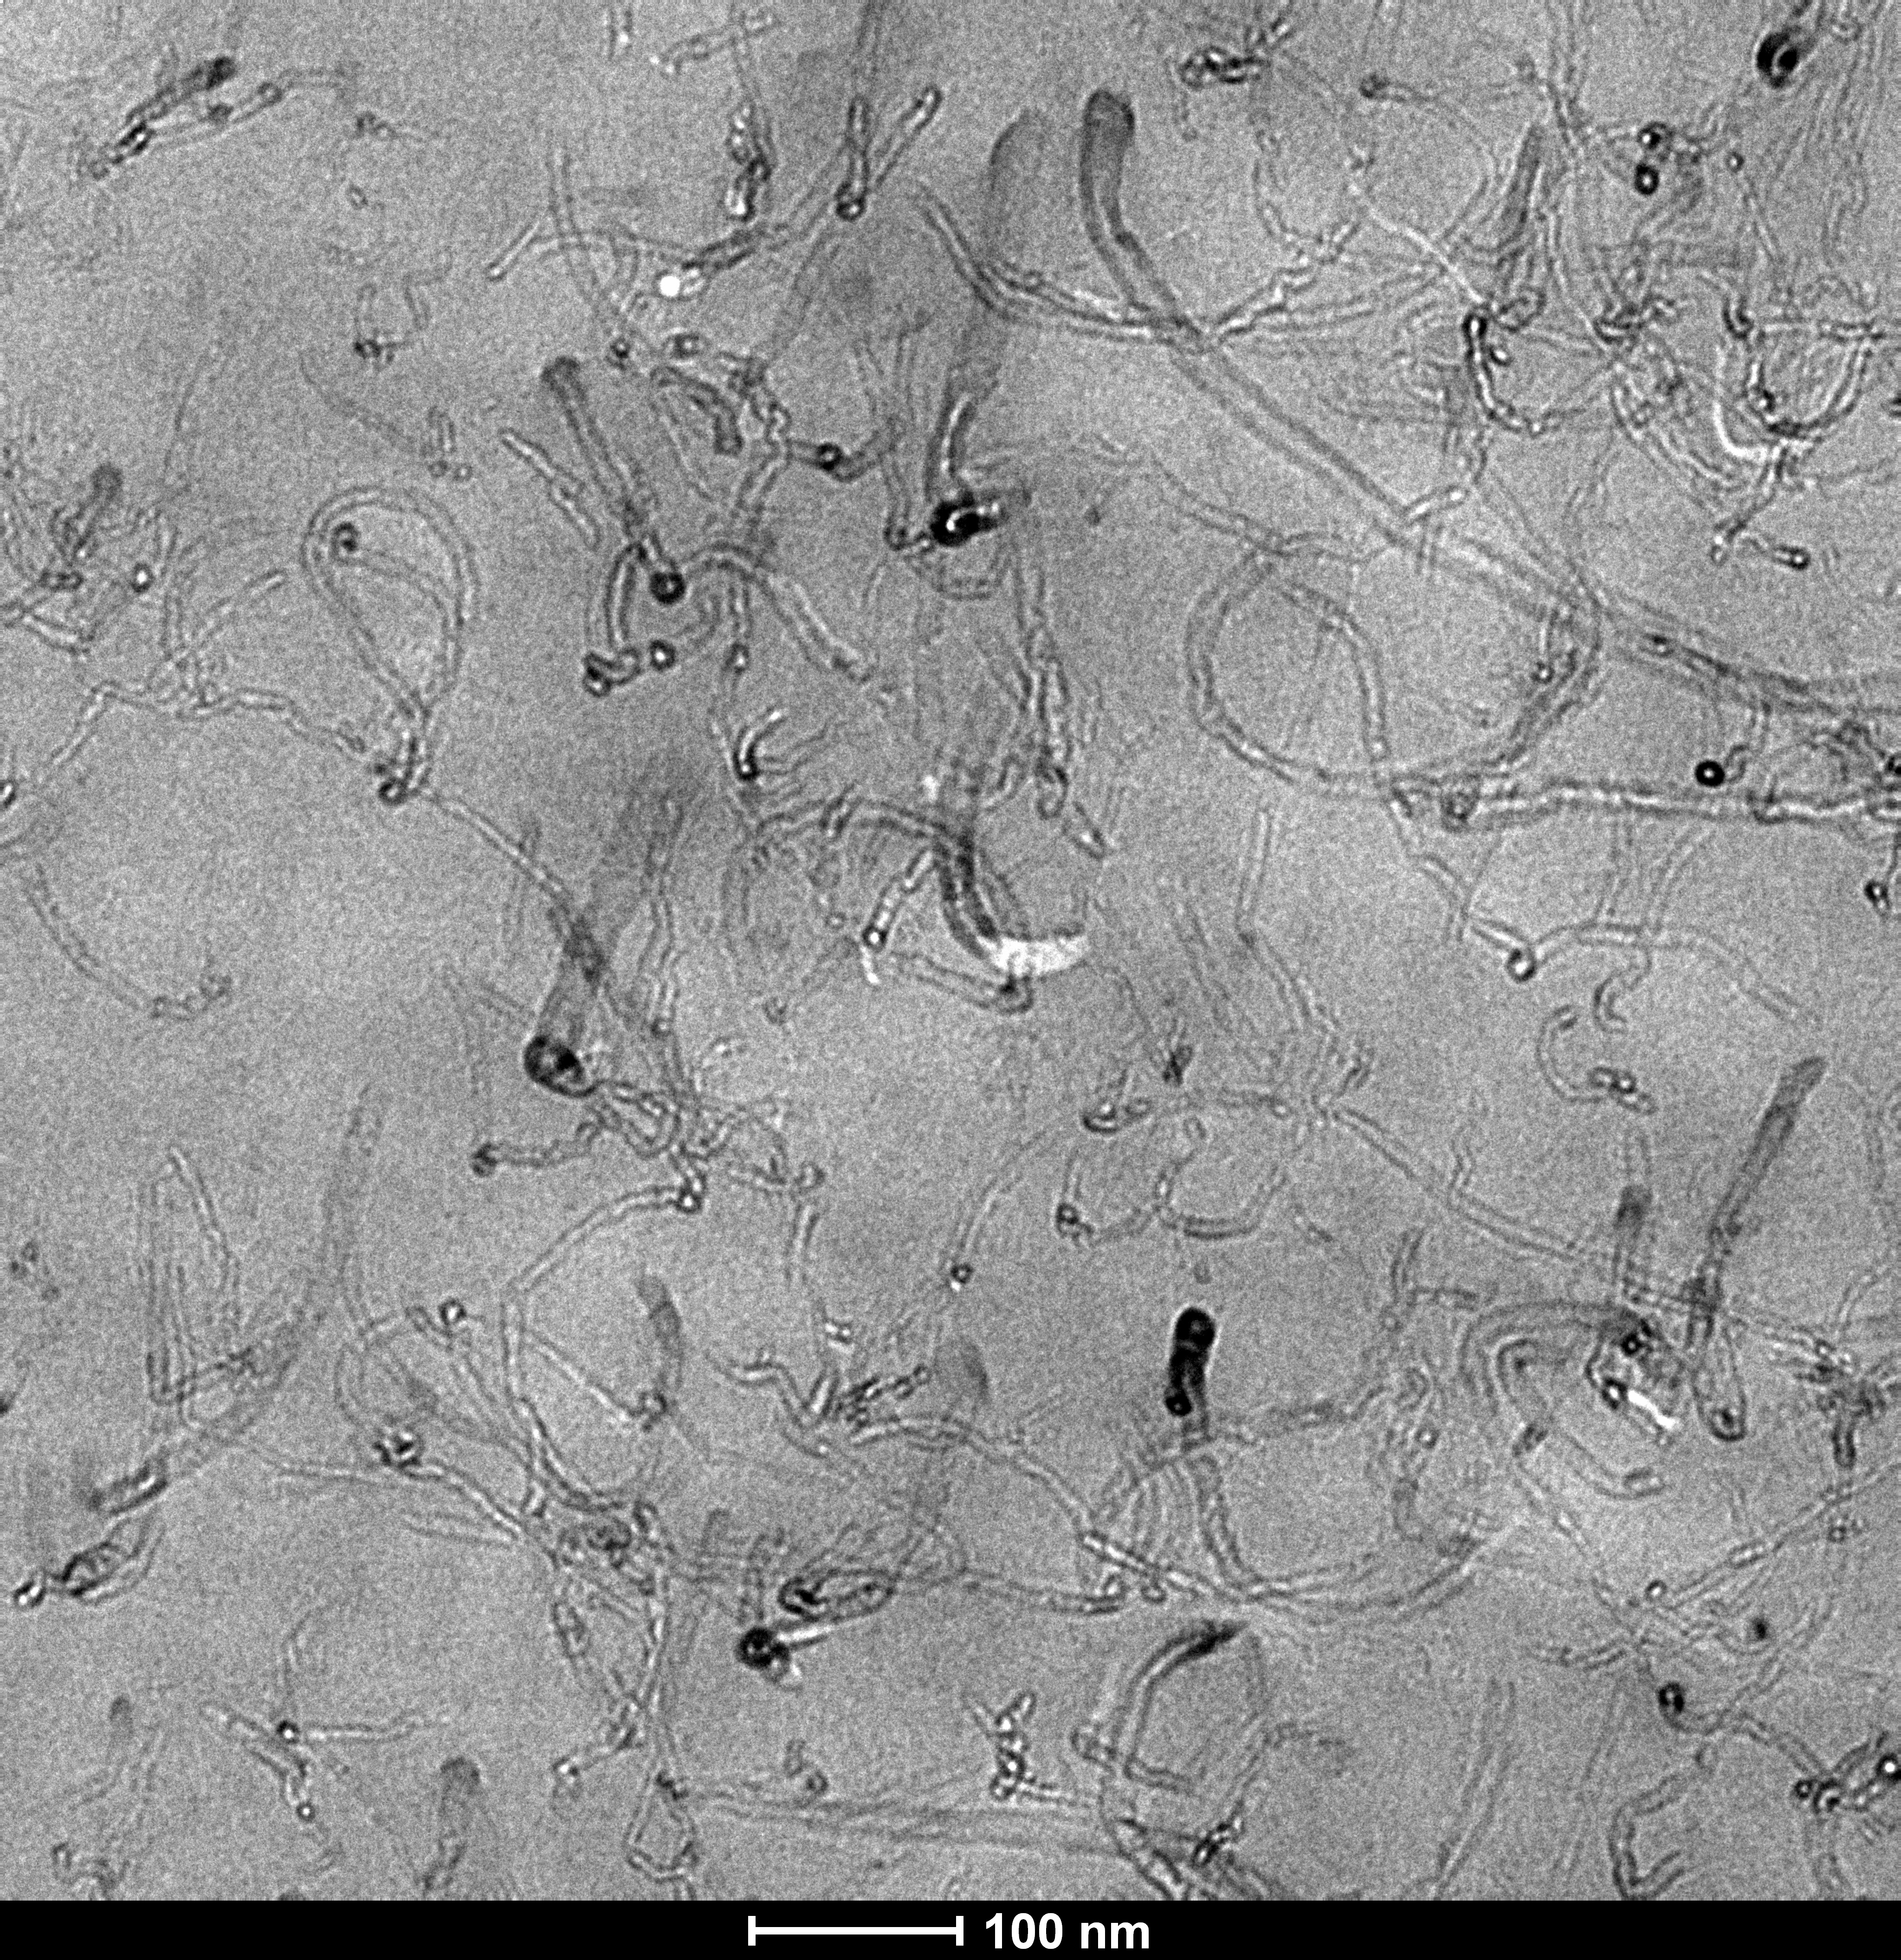 Micrografía electrónica de transmisión del nanocompuesto (poli éter imida-poli butiléntereftalato)/nanotubos de carbono con 3% de nanotubos. Fuente: UPV-EHU.